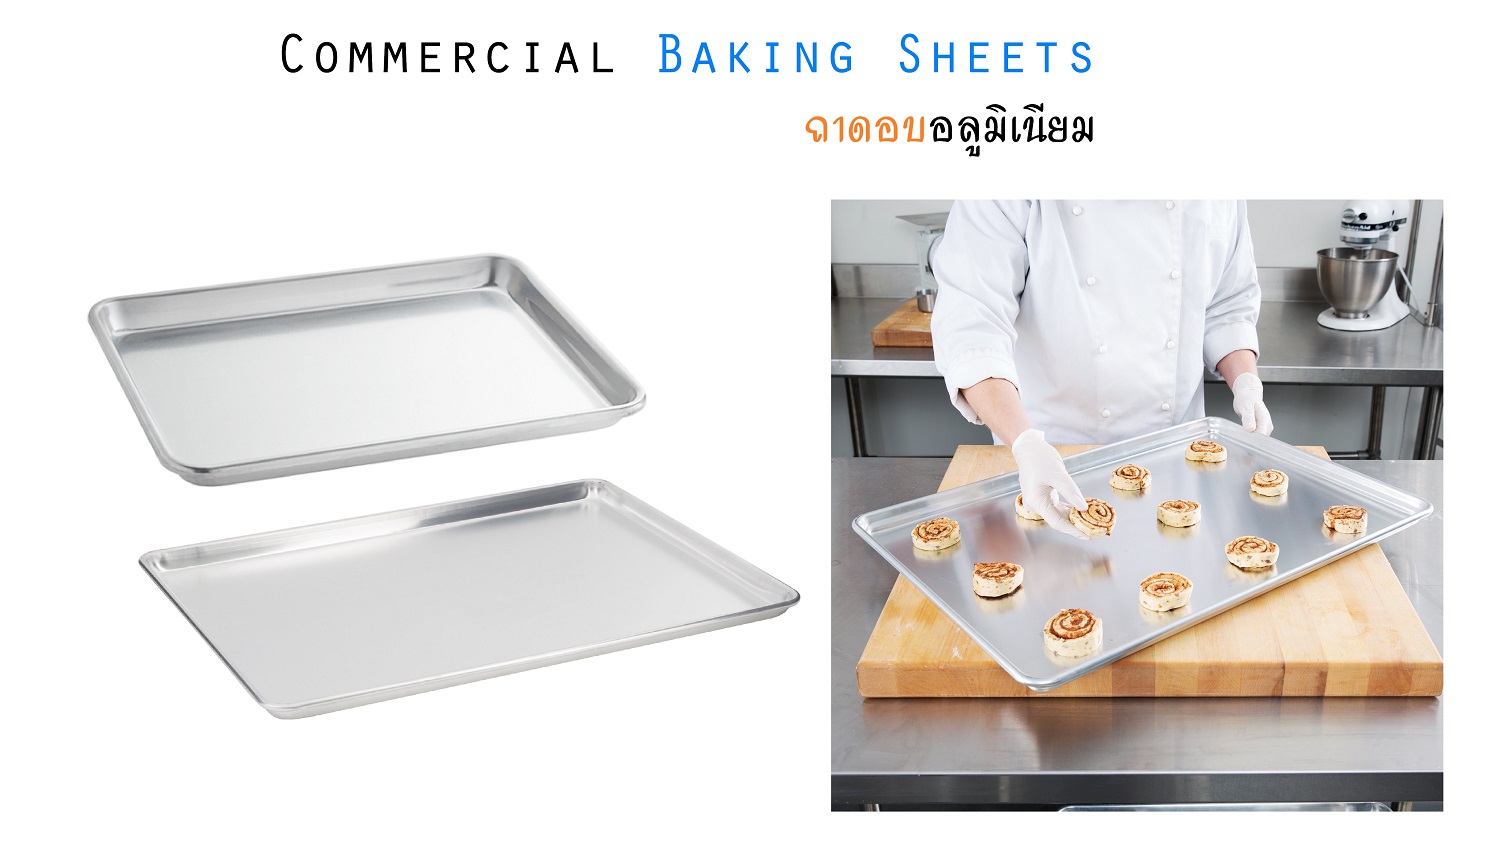 ถาดอบ ถาดอบขนม ถาดอบอาหาร ถาดเตาอบ ถาดอบอลูมิเนียม อุปกรณ์เบเกอรี่ Commercial Baking Sheets